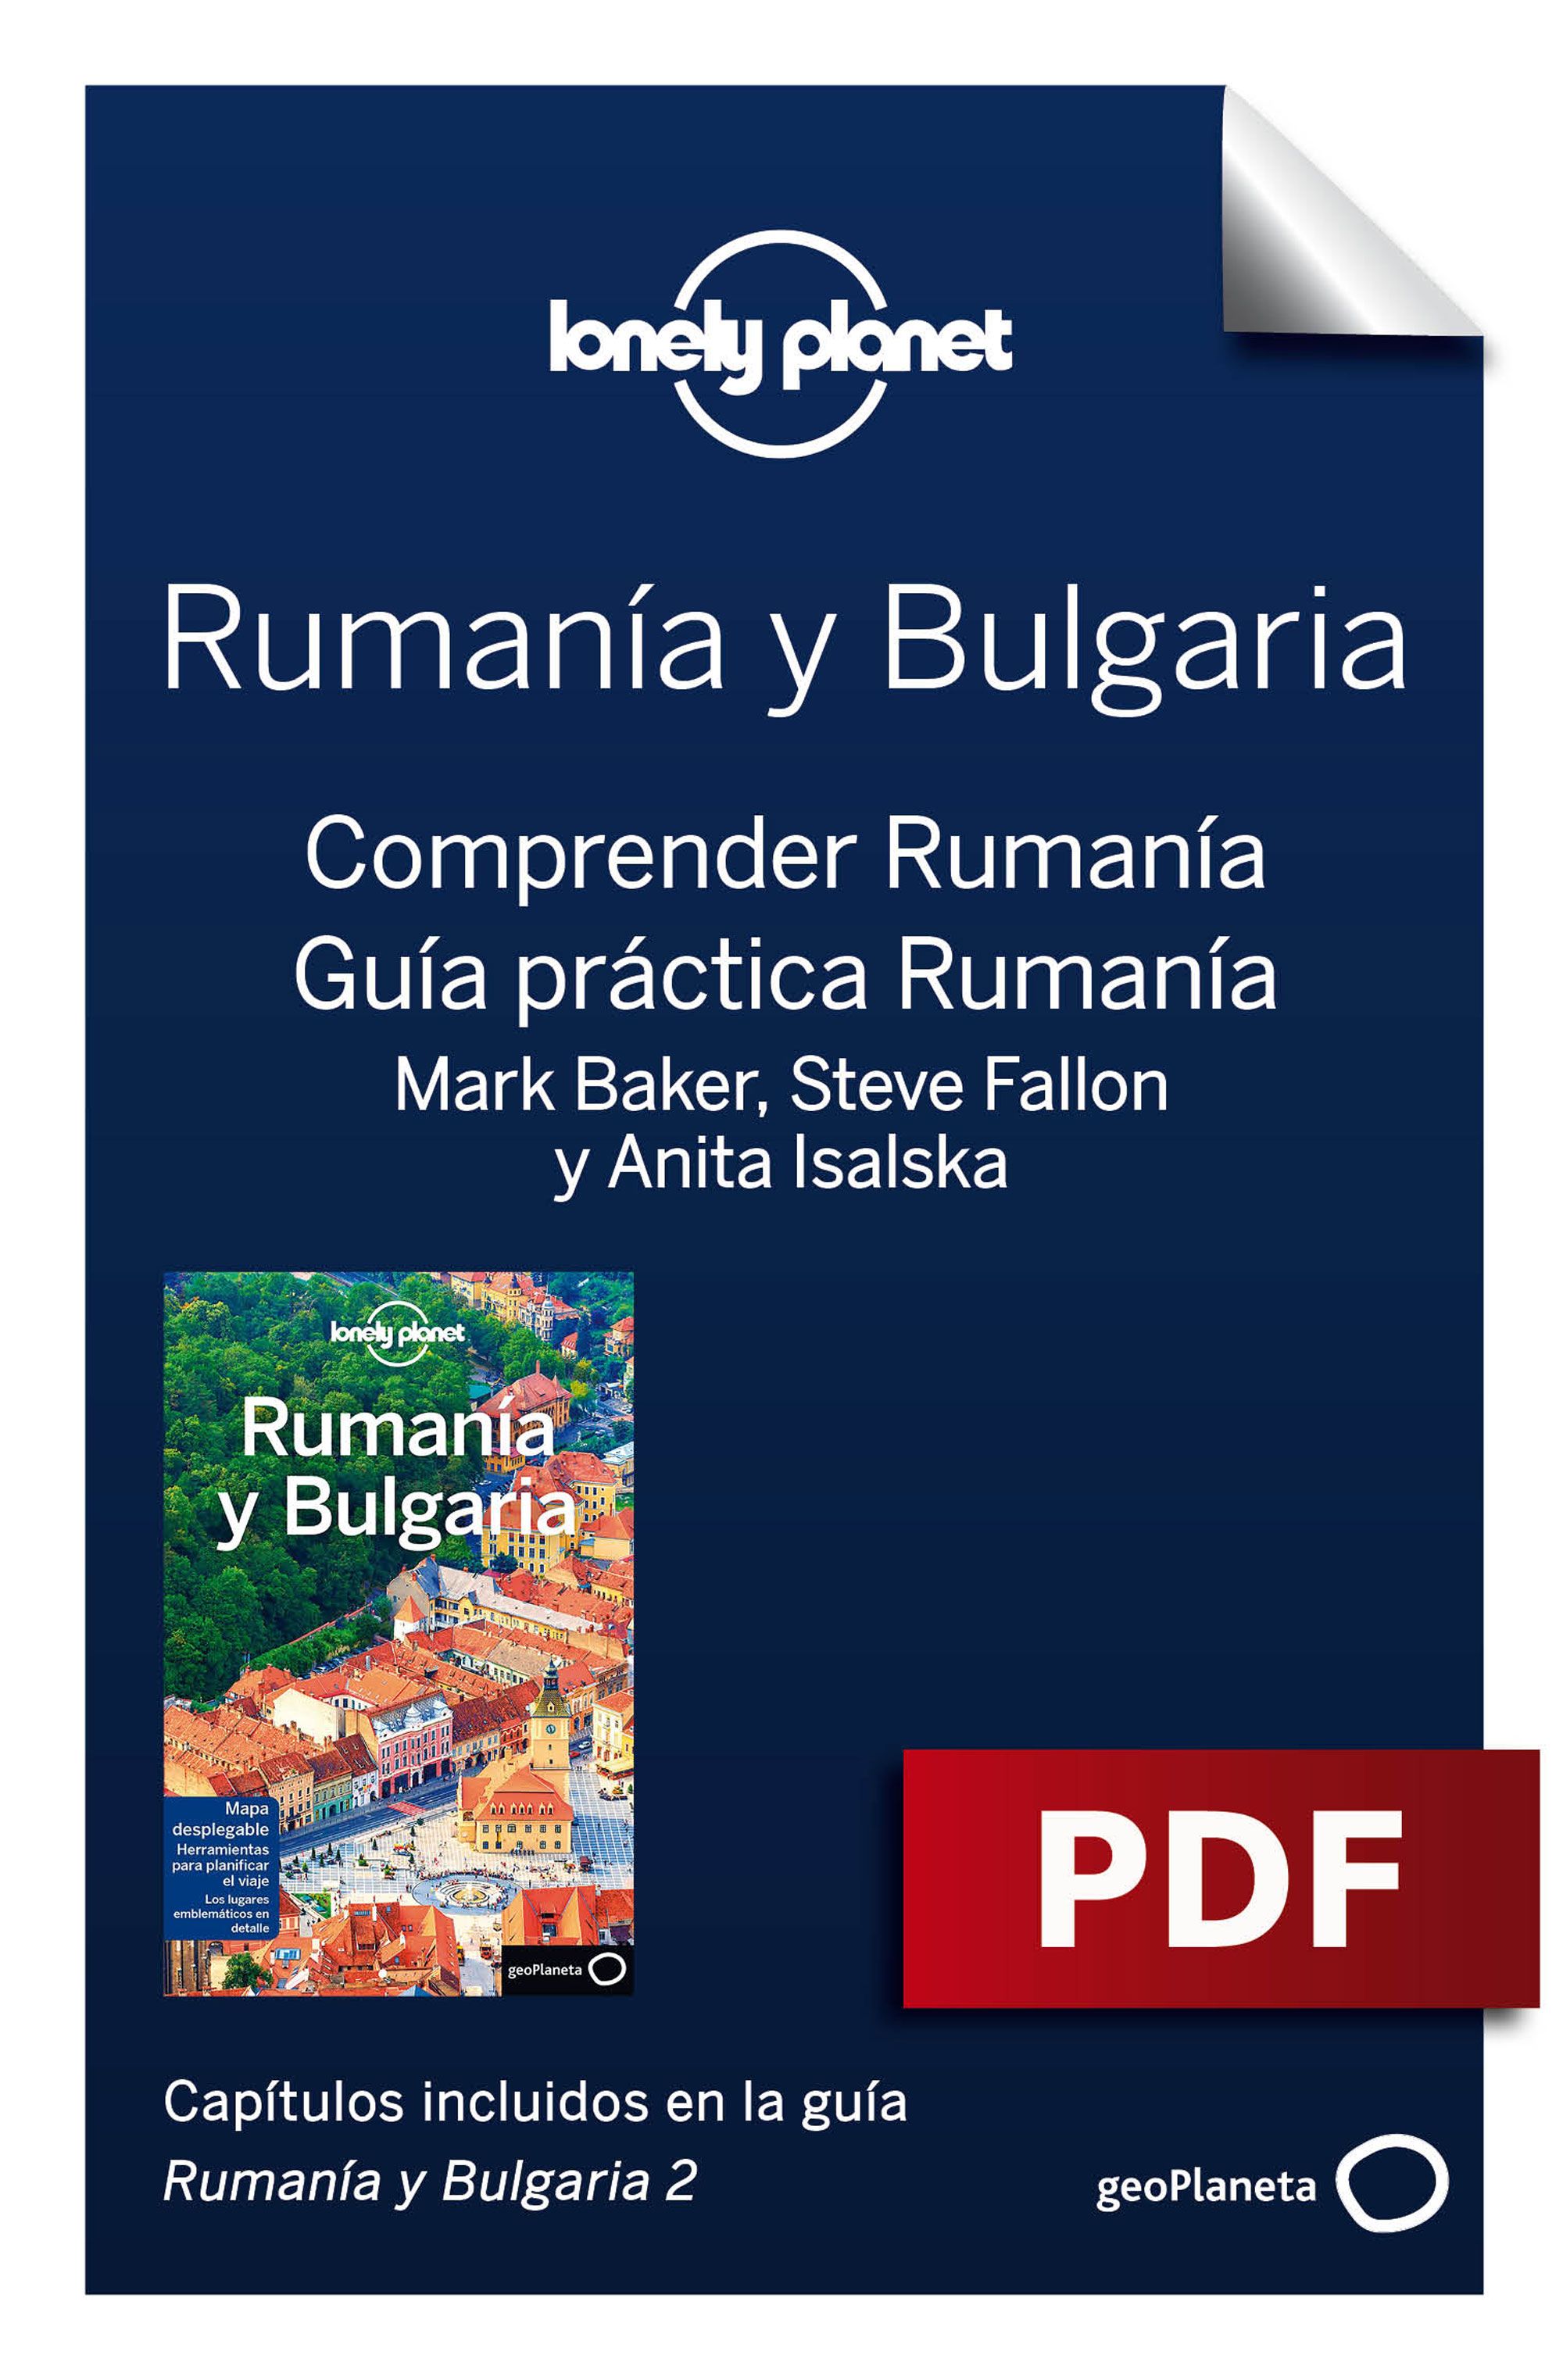 Comprender y Guía práctica Rumanía